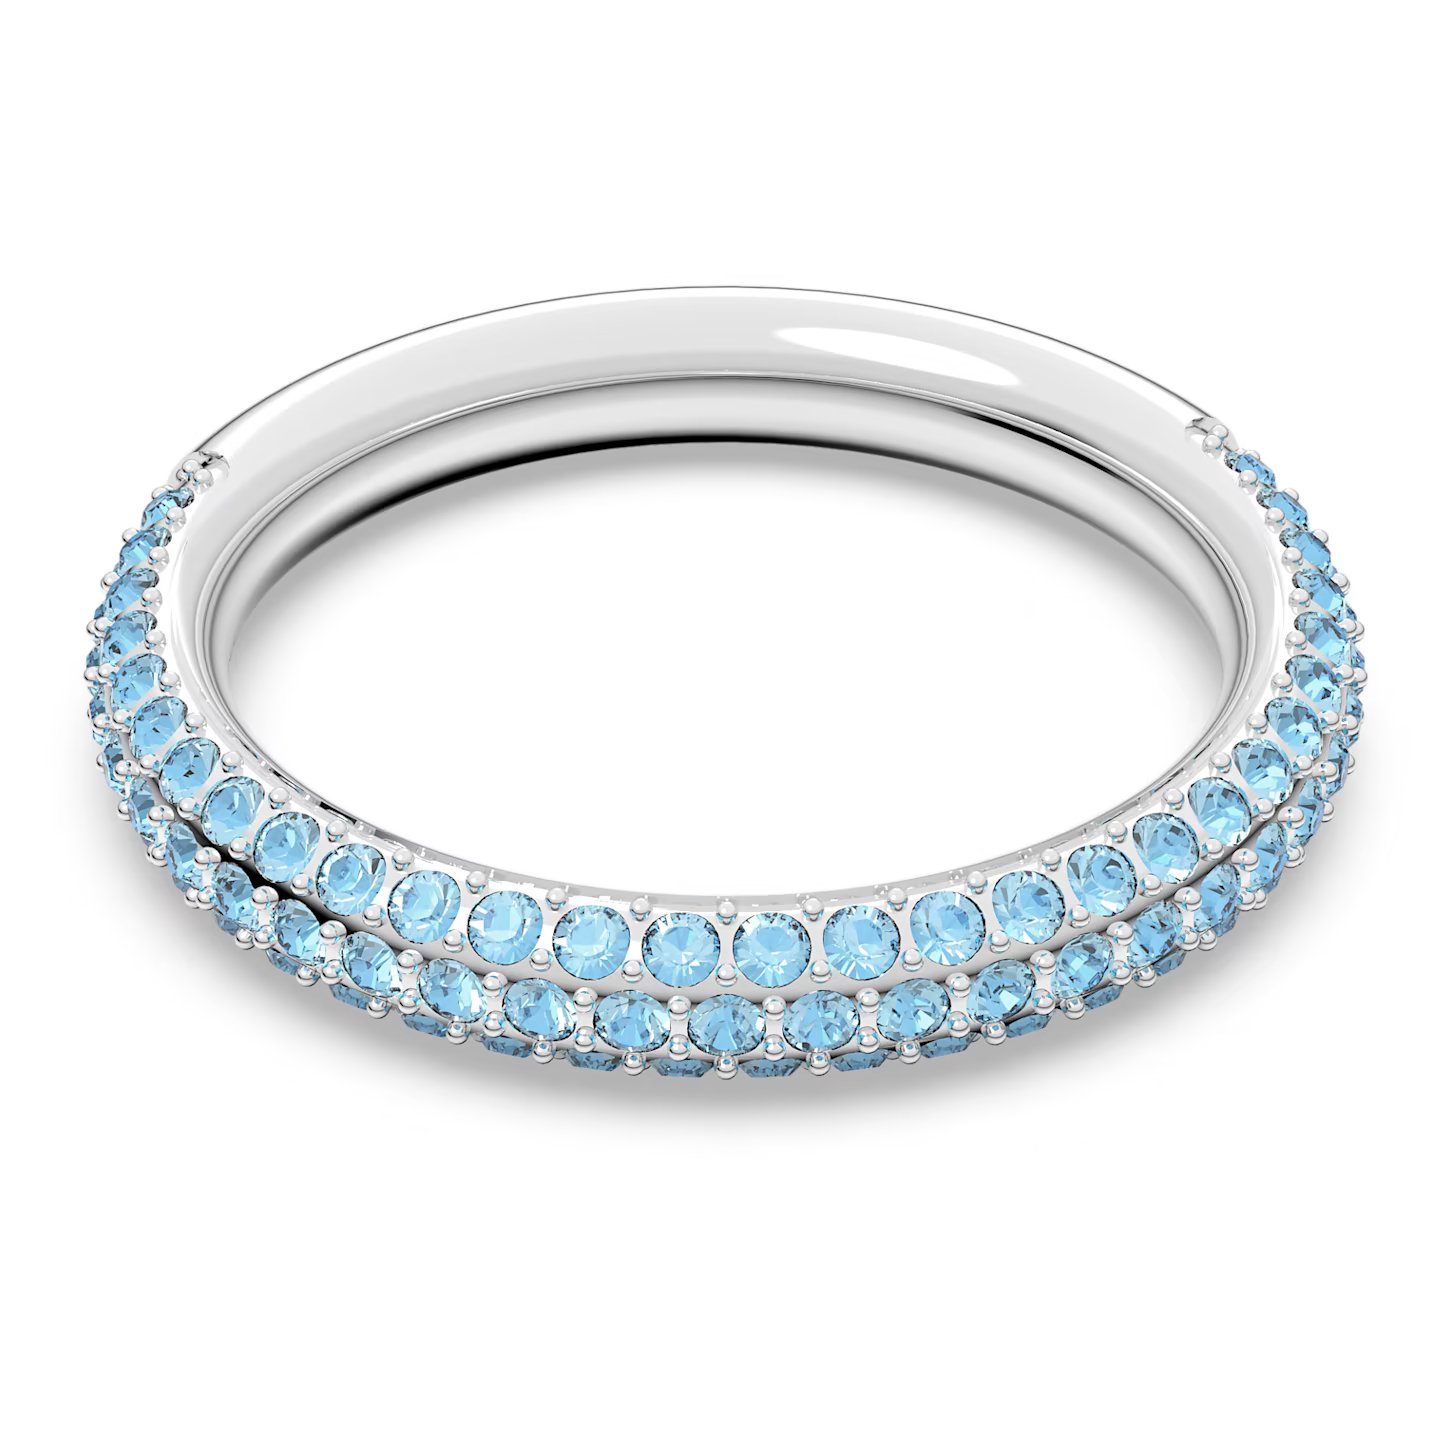 Swarovski Nádherný prsten s modrými krystaly Swarovski Stone 5642903 55 mm